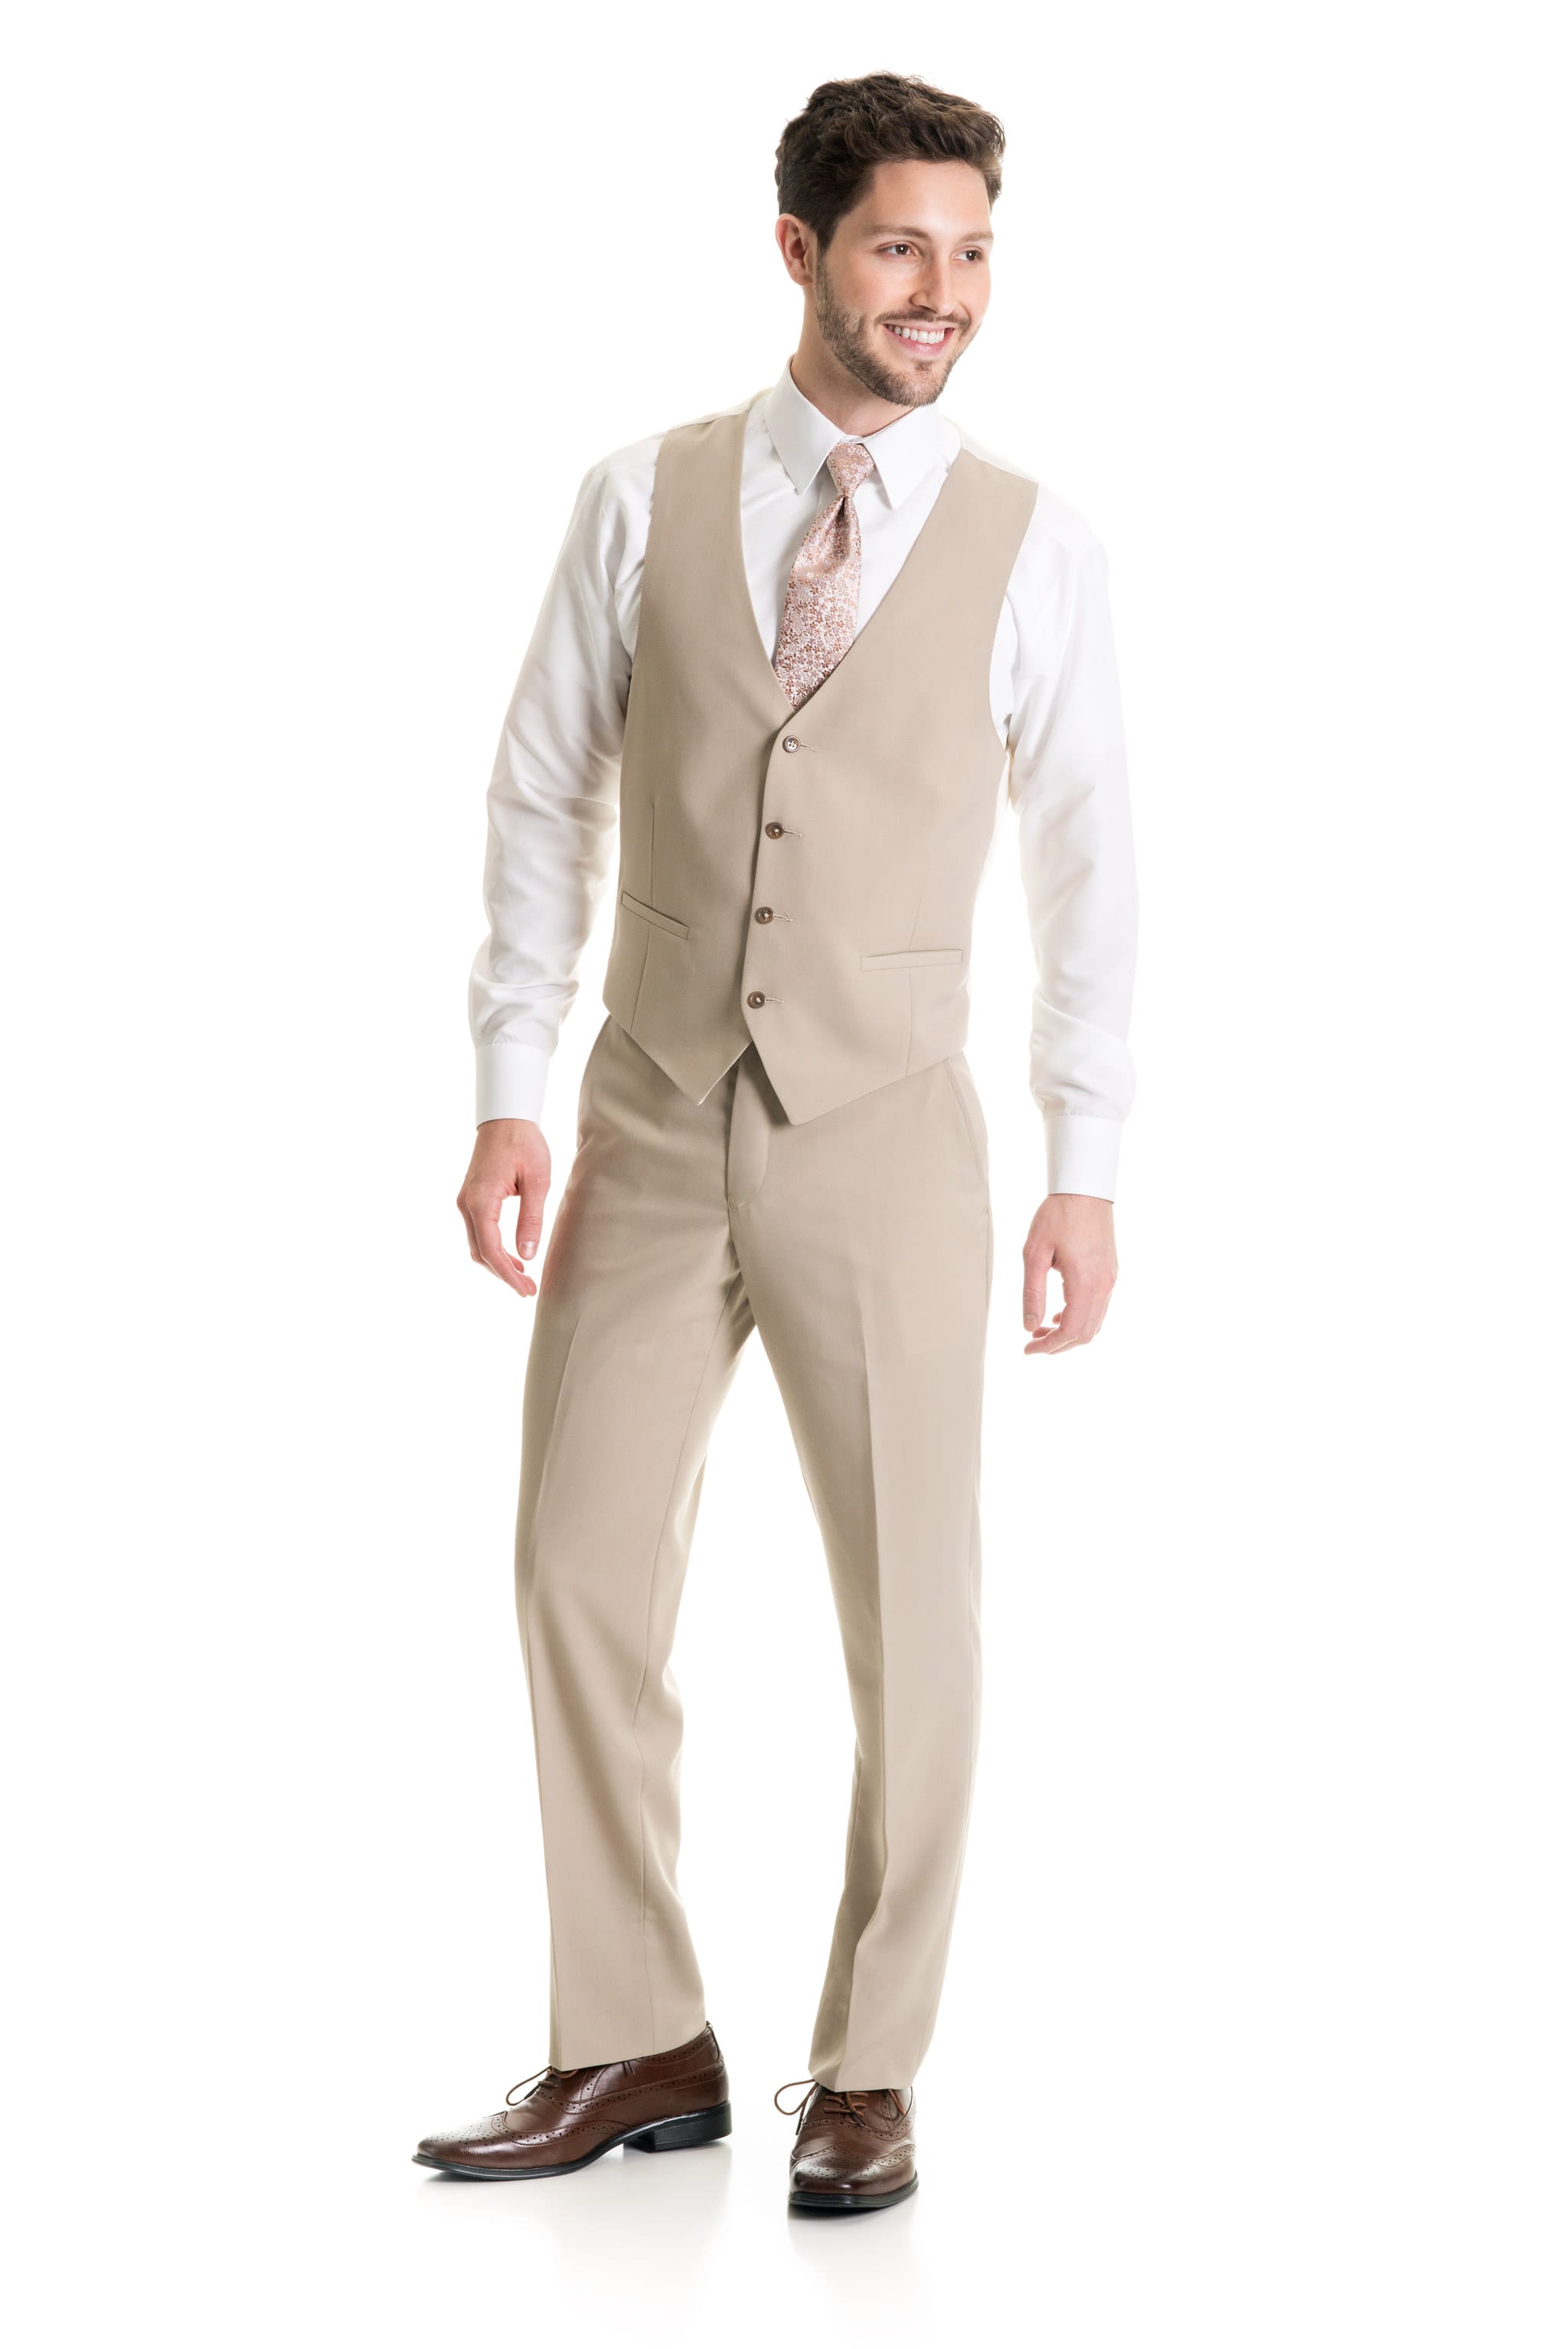 Tan Suit Separates Vest  Jims Formal Wear Shop